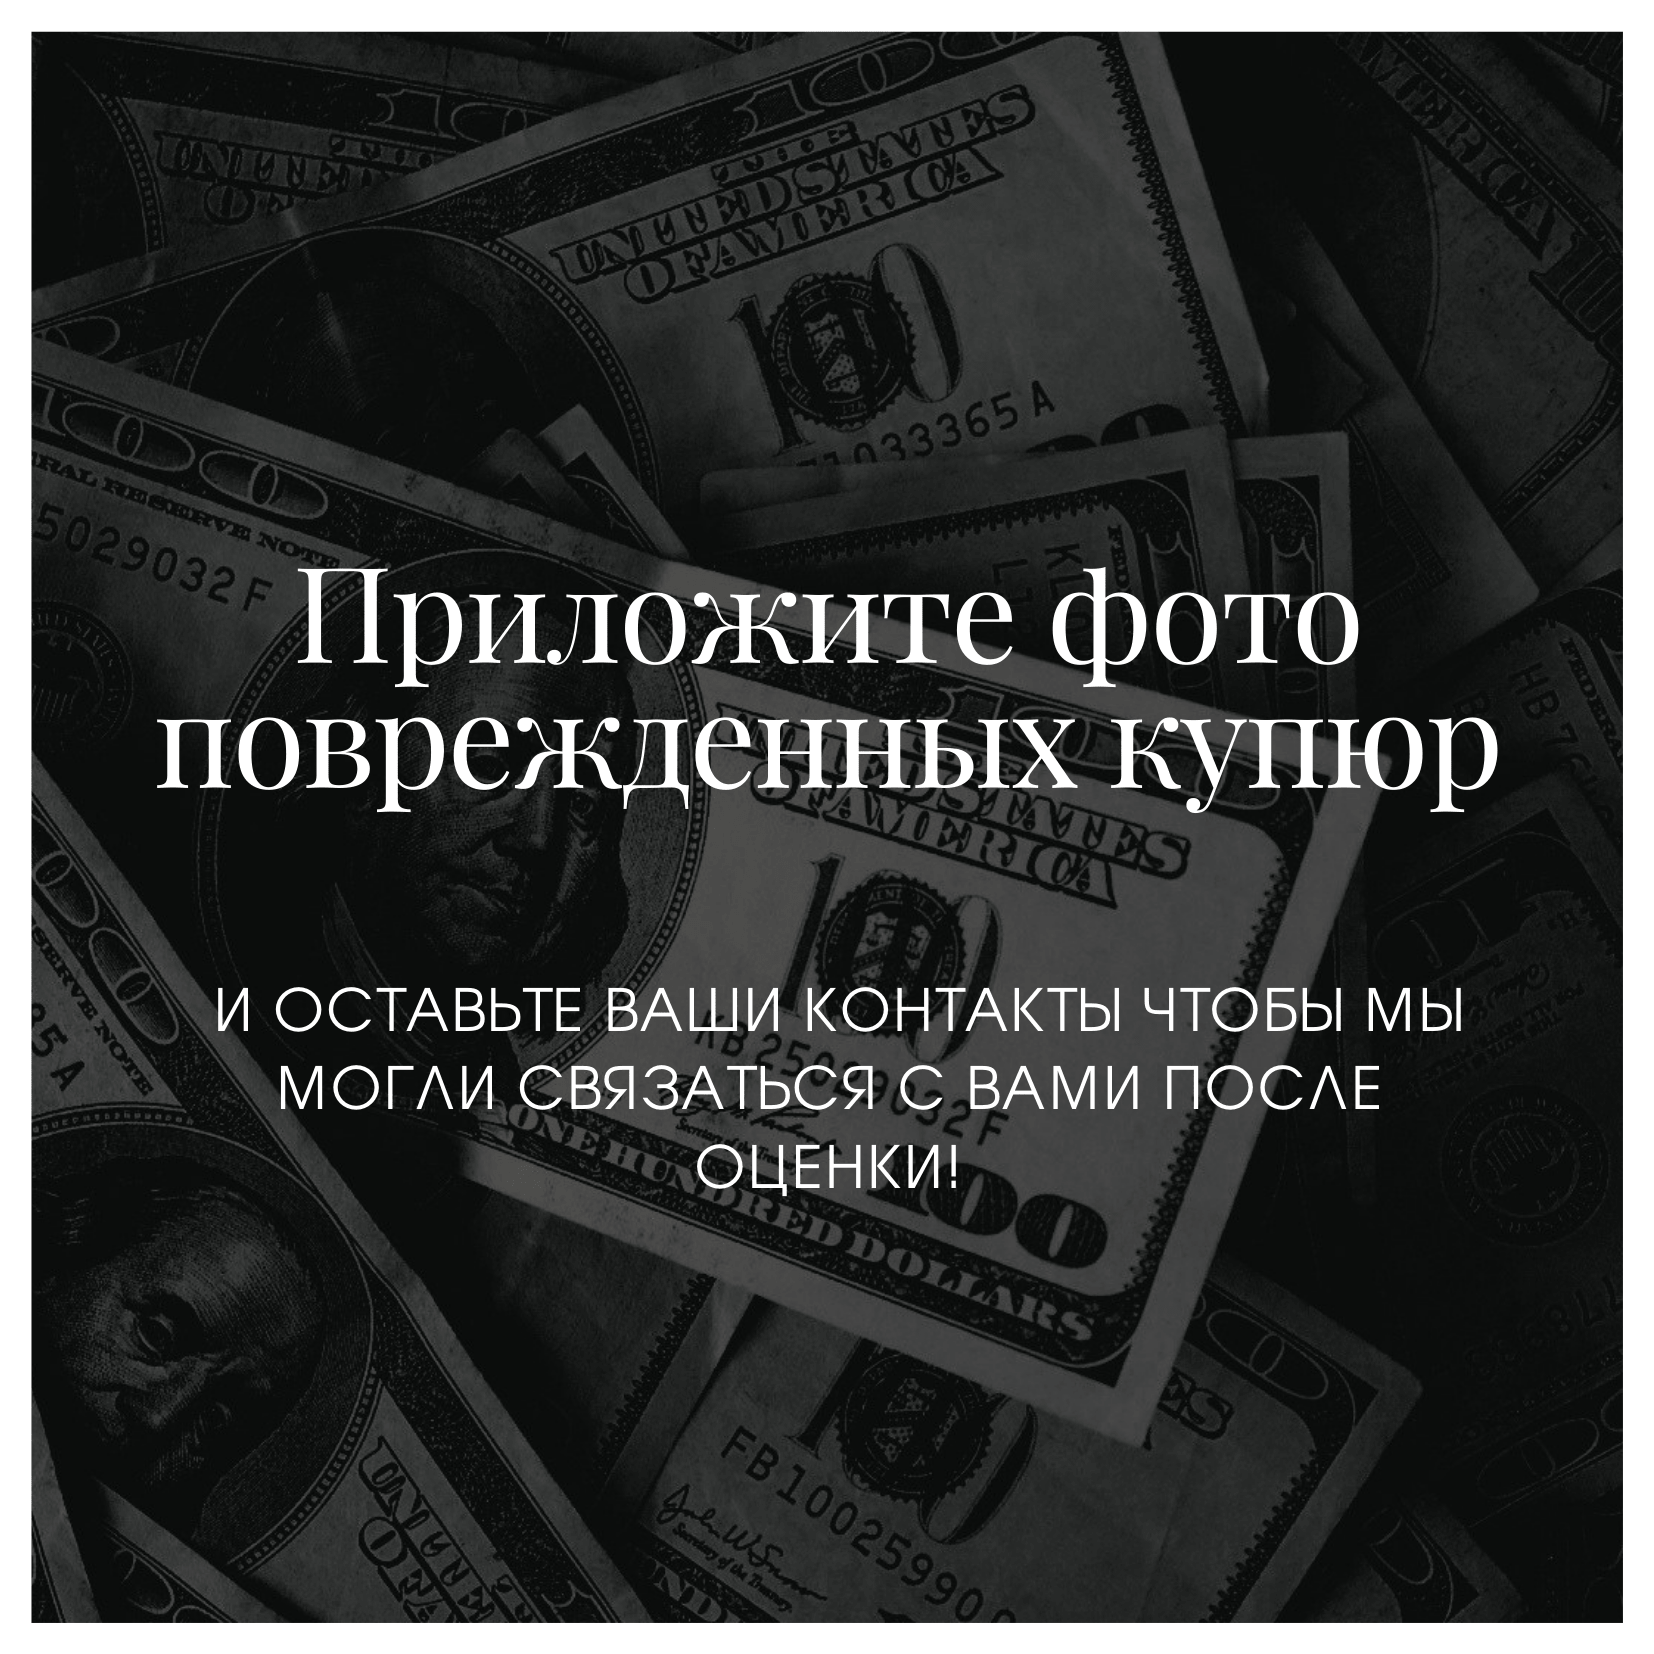 Обмен валют в москве лучший онлайн обмен валют спб